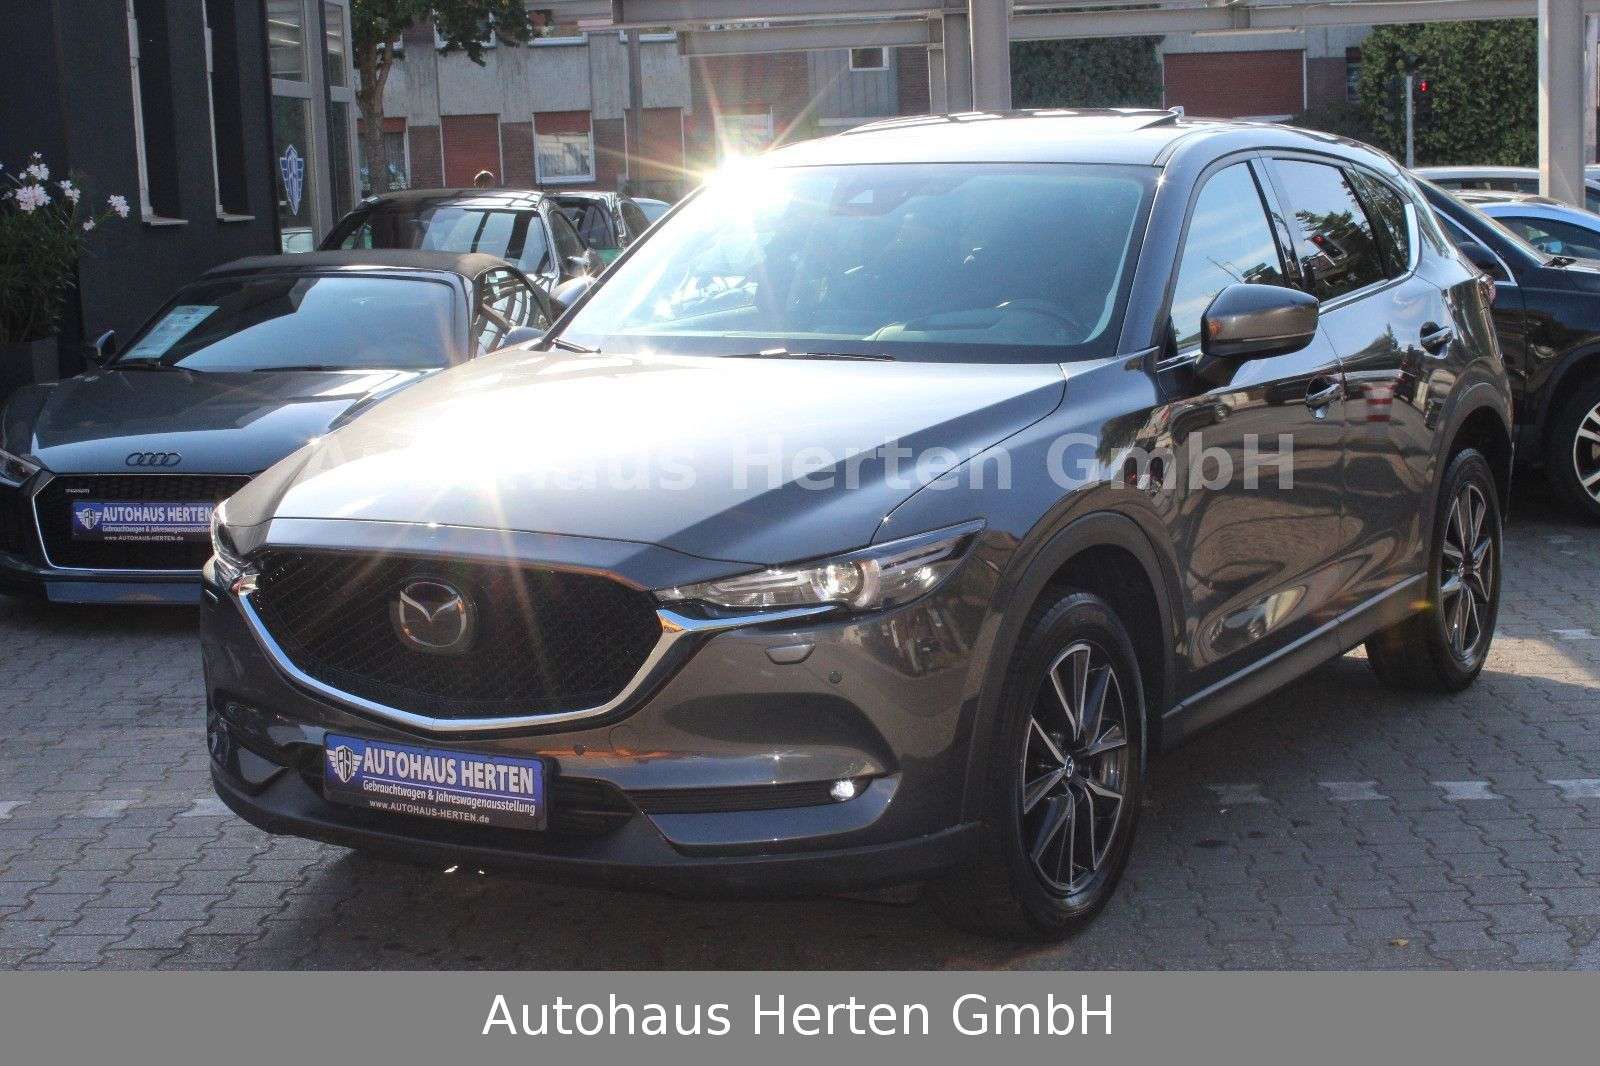 Mazda CX-5 Off-Road/Pick-up in Grey used in Herten for € 23,800.-